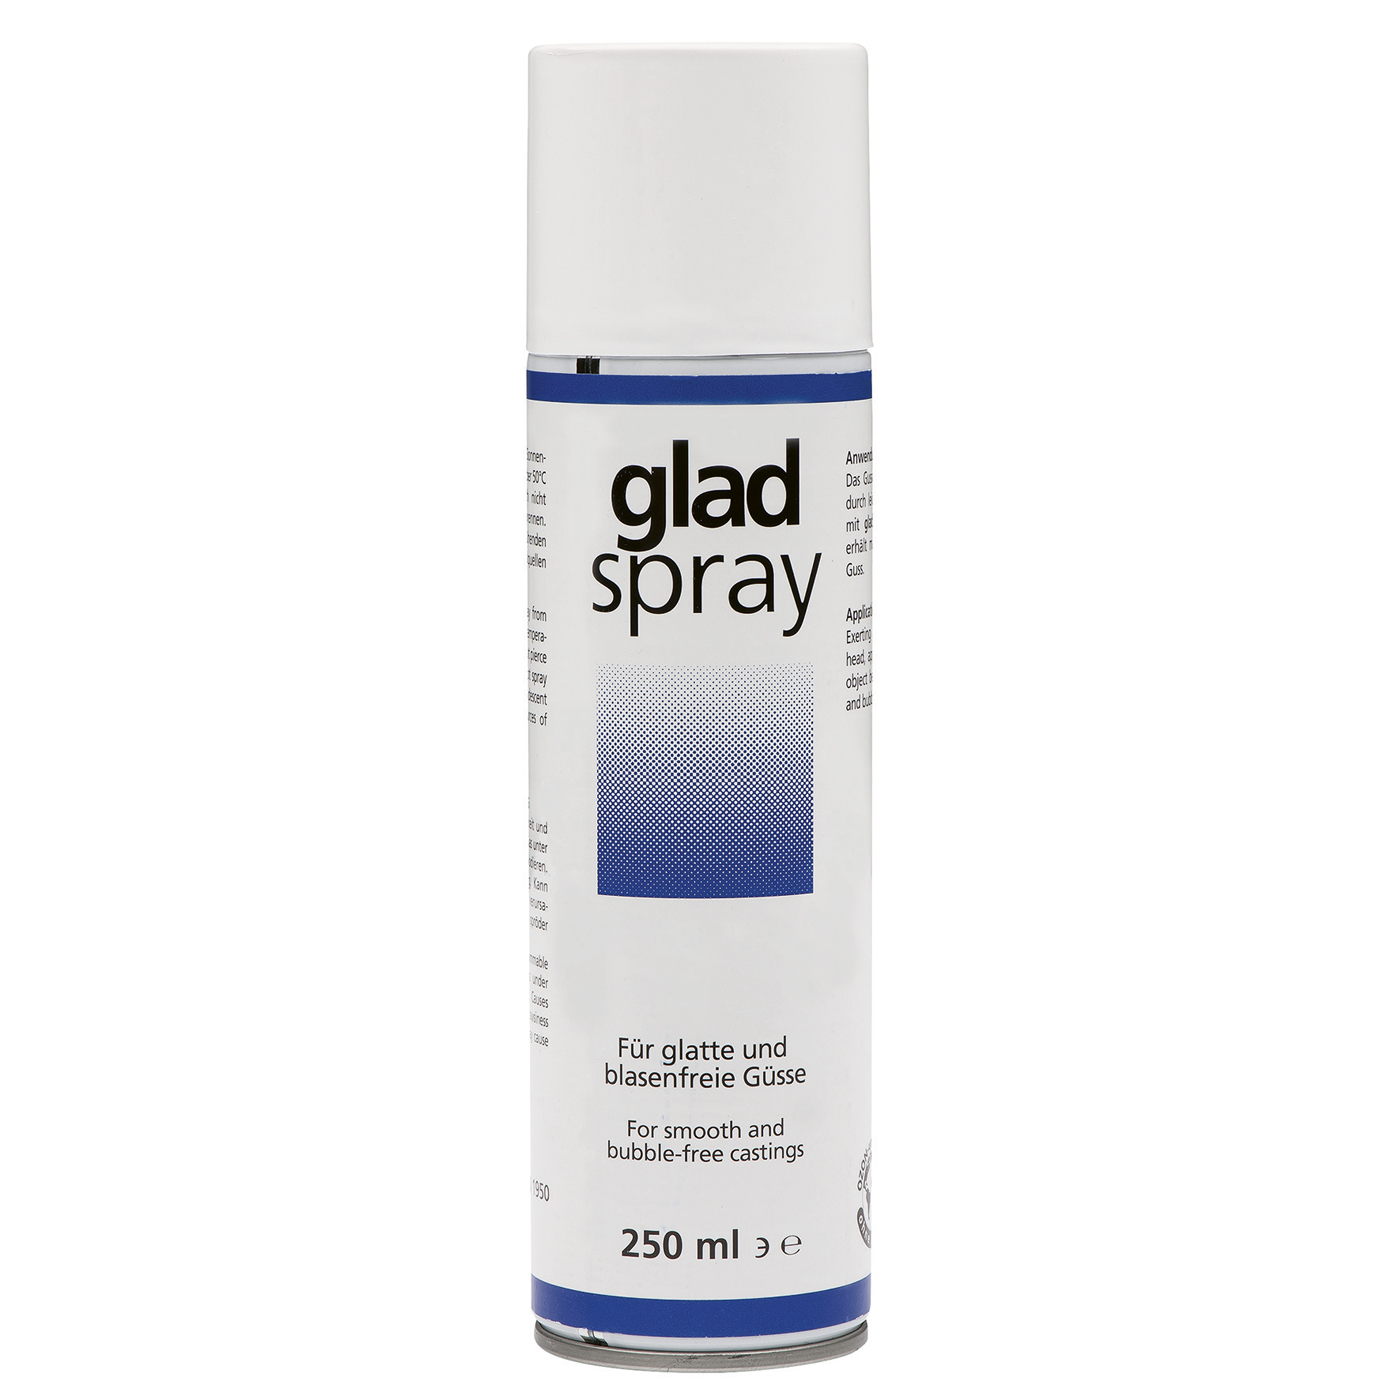 Detax glad-spray Netzmittel - 250 ml